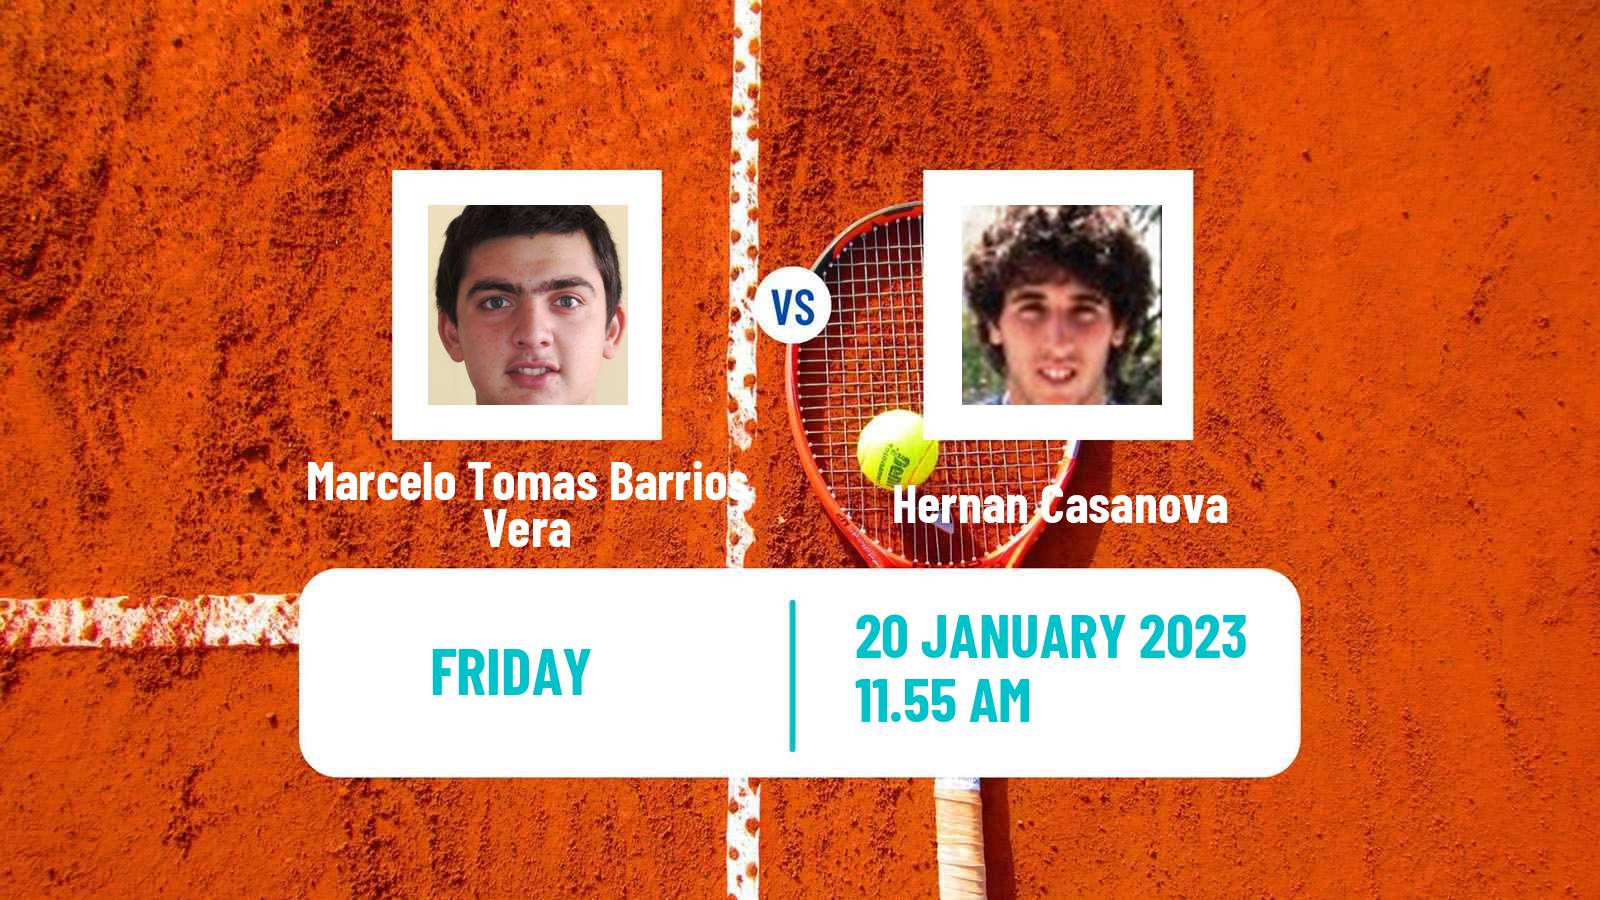 Tennis ATP Challenger Marcelo Tomas Barrios Vera - Hernan Casanova